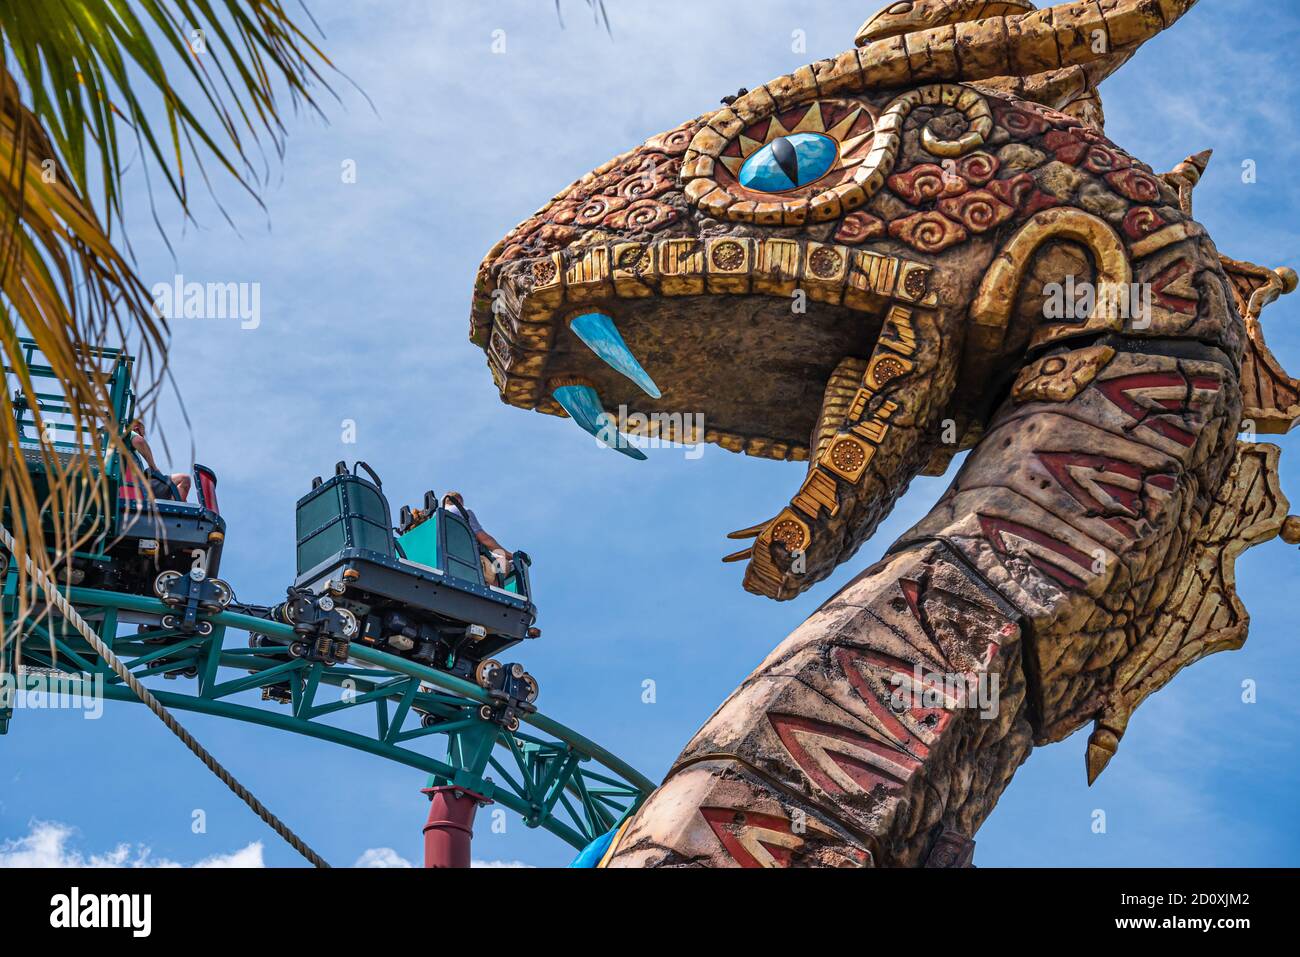 Gli amanti del brivido potranno godersi la Cobras Curse, un giro sulle montagne russe exteme con ascensore verticale presso Busch Gardens Tampa Bay a Tampa, Florida. (STATI UNITI) Foto Stock